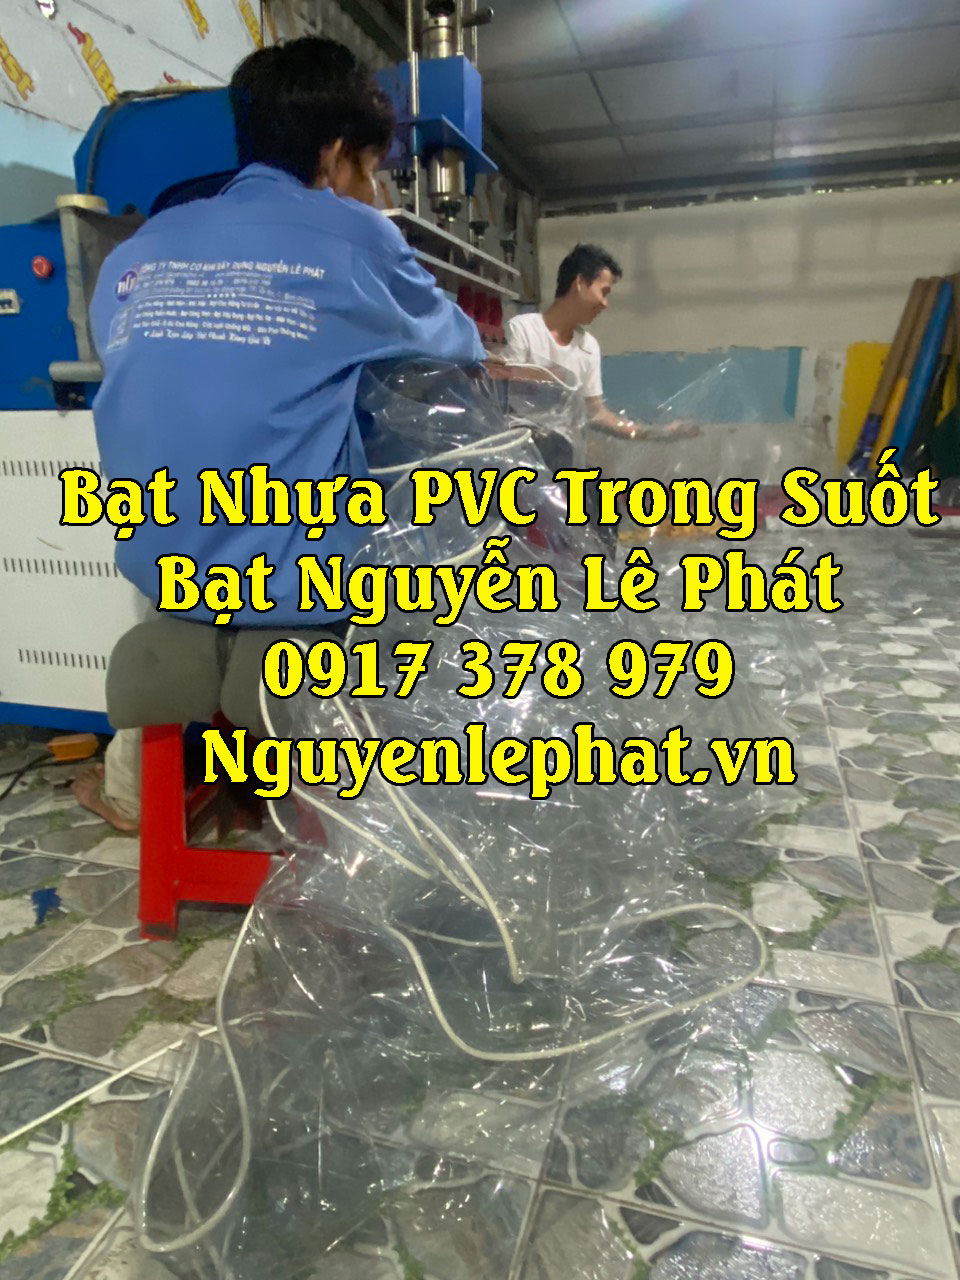 Bạt nhựa PVC Trong Suốt